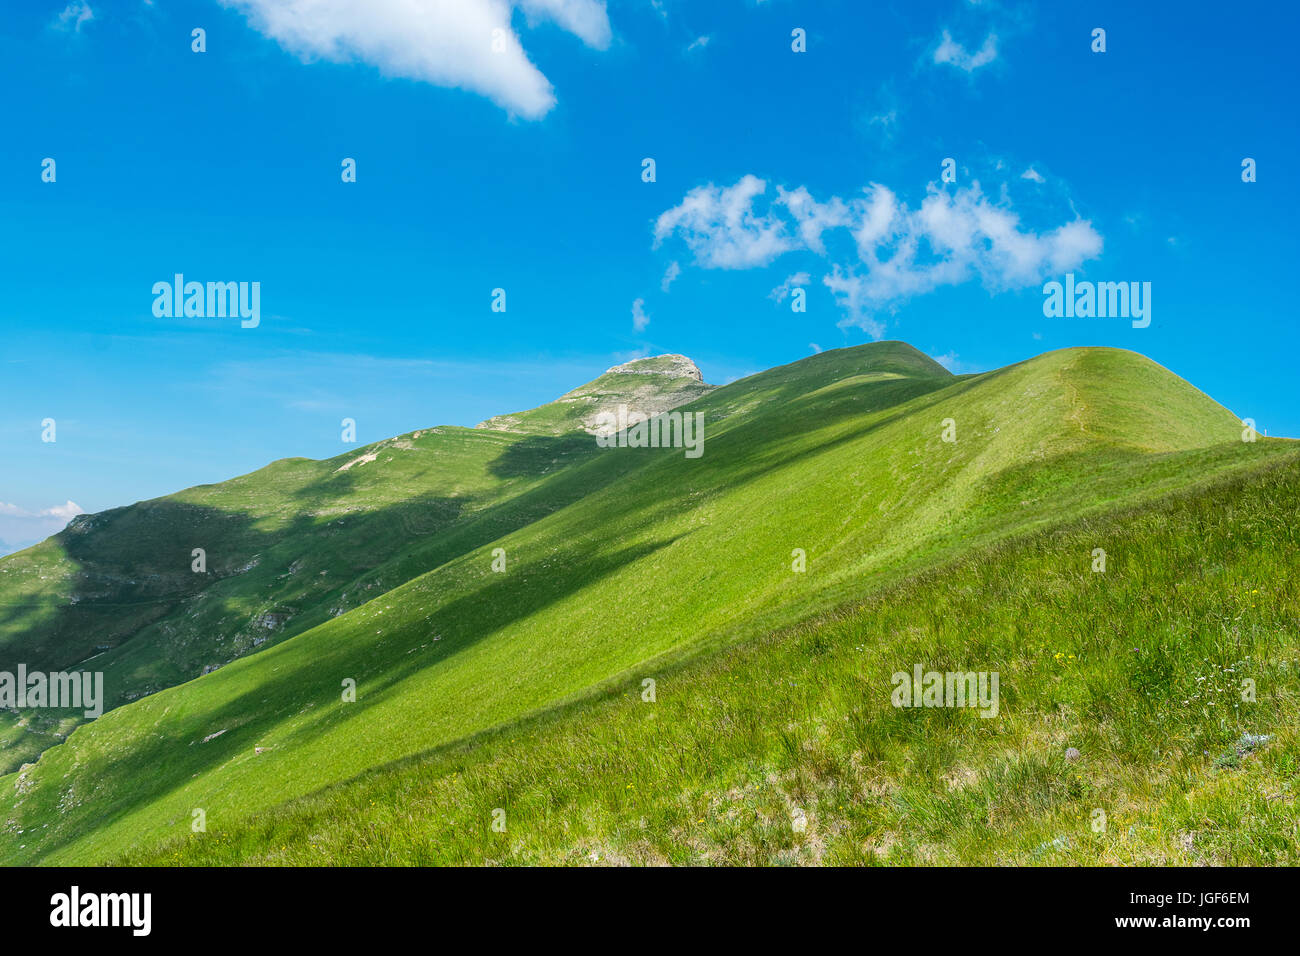 Dolomites hiking, Italy Stock Photo